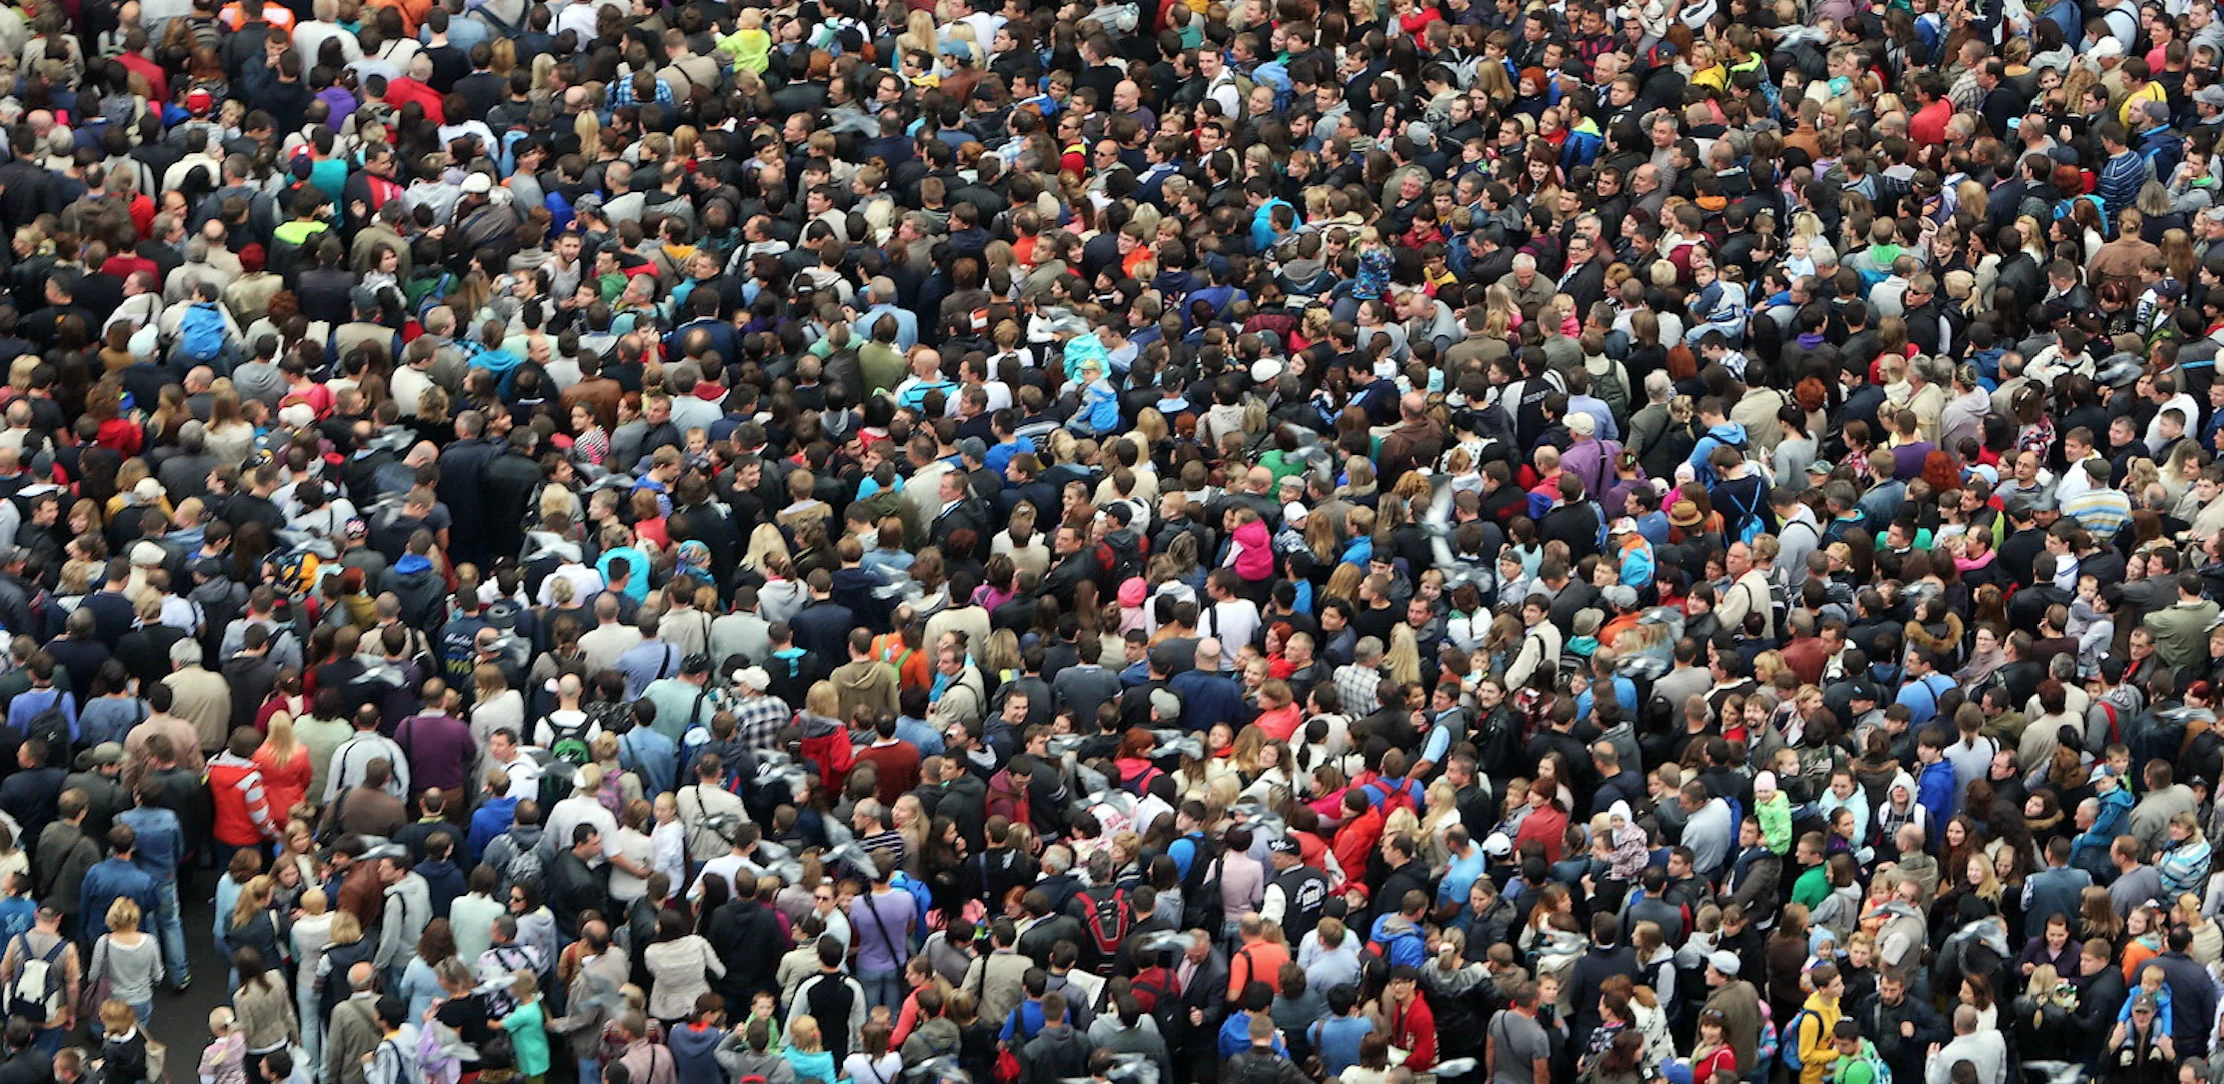 Много людей много народу. Большая толпа людей. Большое скопление людей. Массовое скопление людей. Много народу.